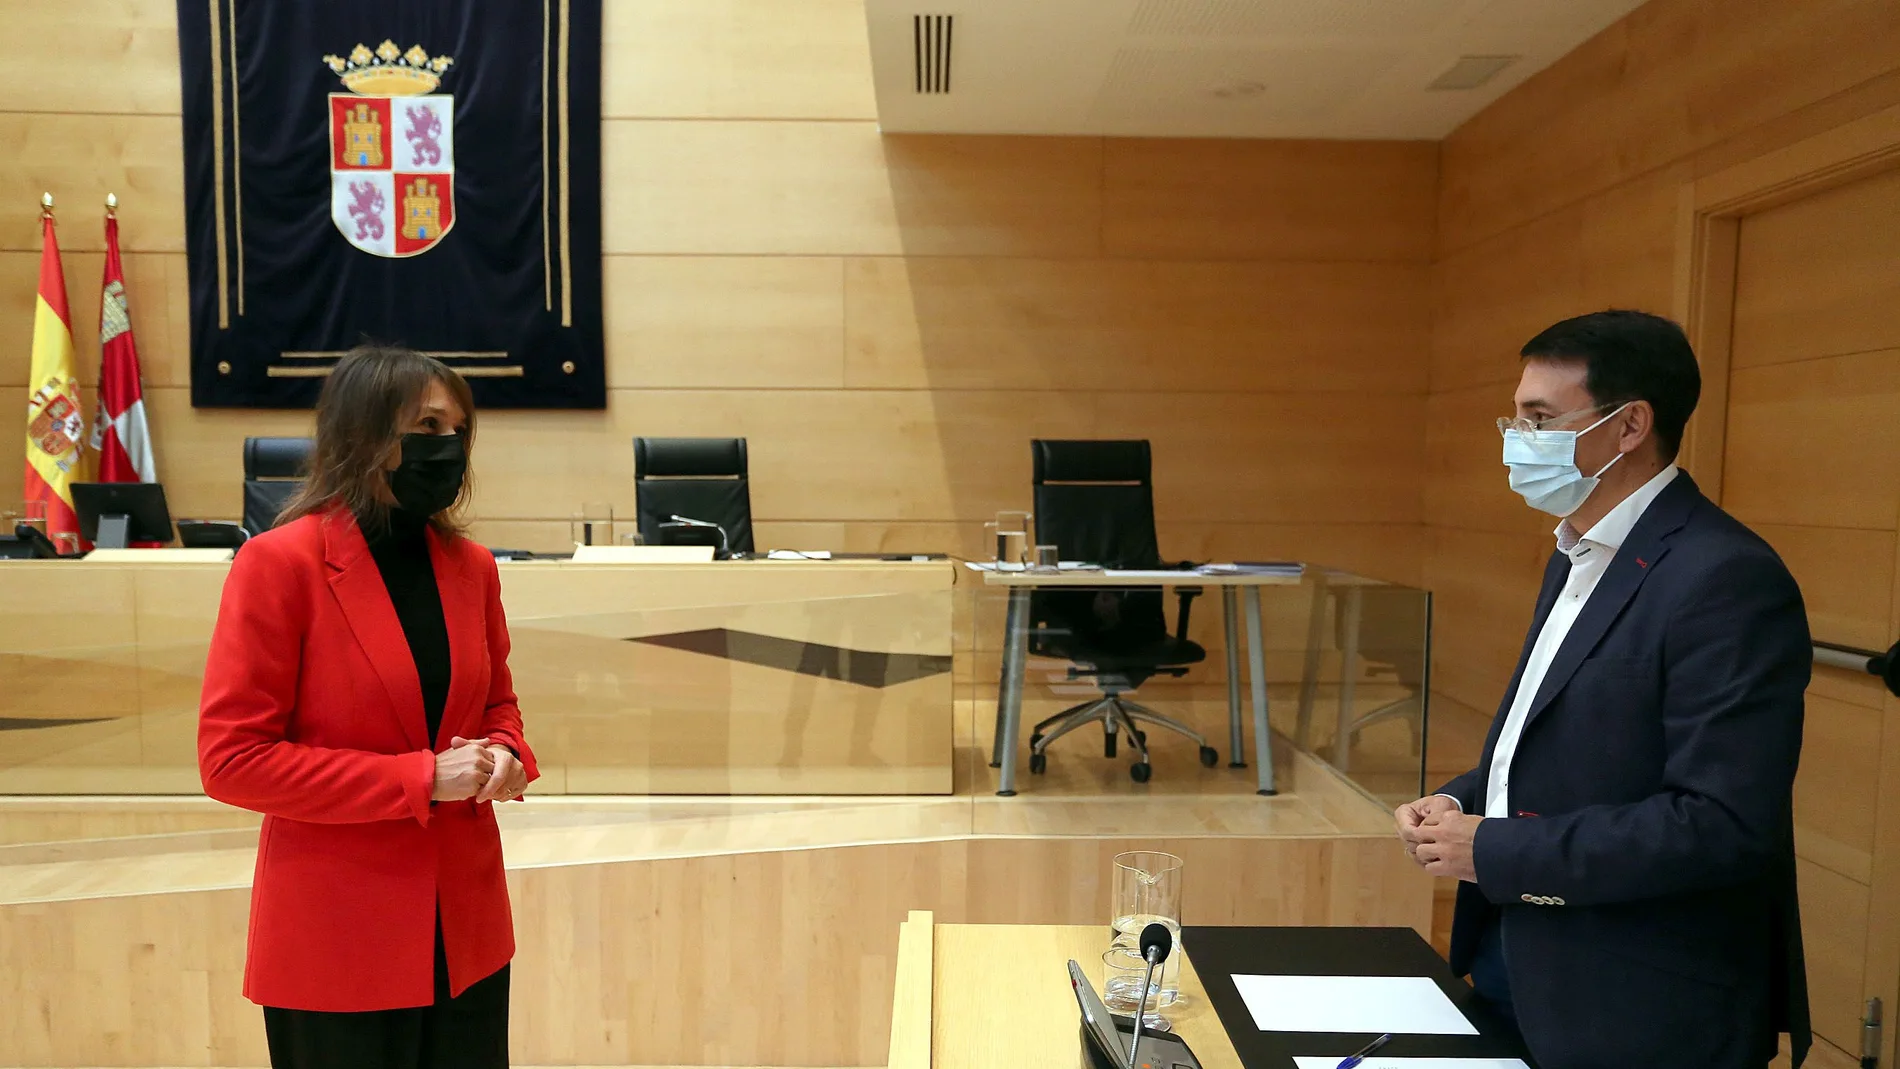 La consejera de Educación, Rocío Lucas, conversa con el procurador socialista Fernando Pablos